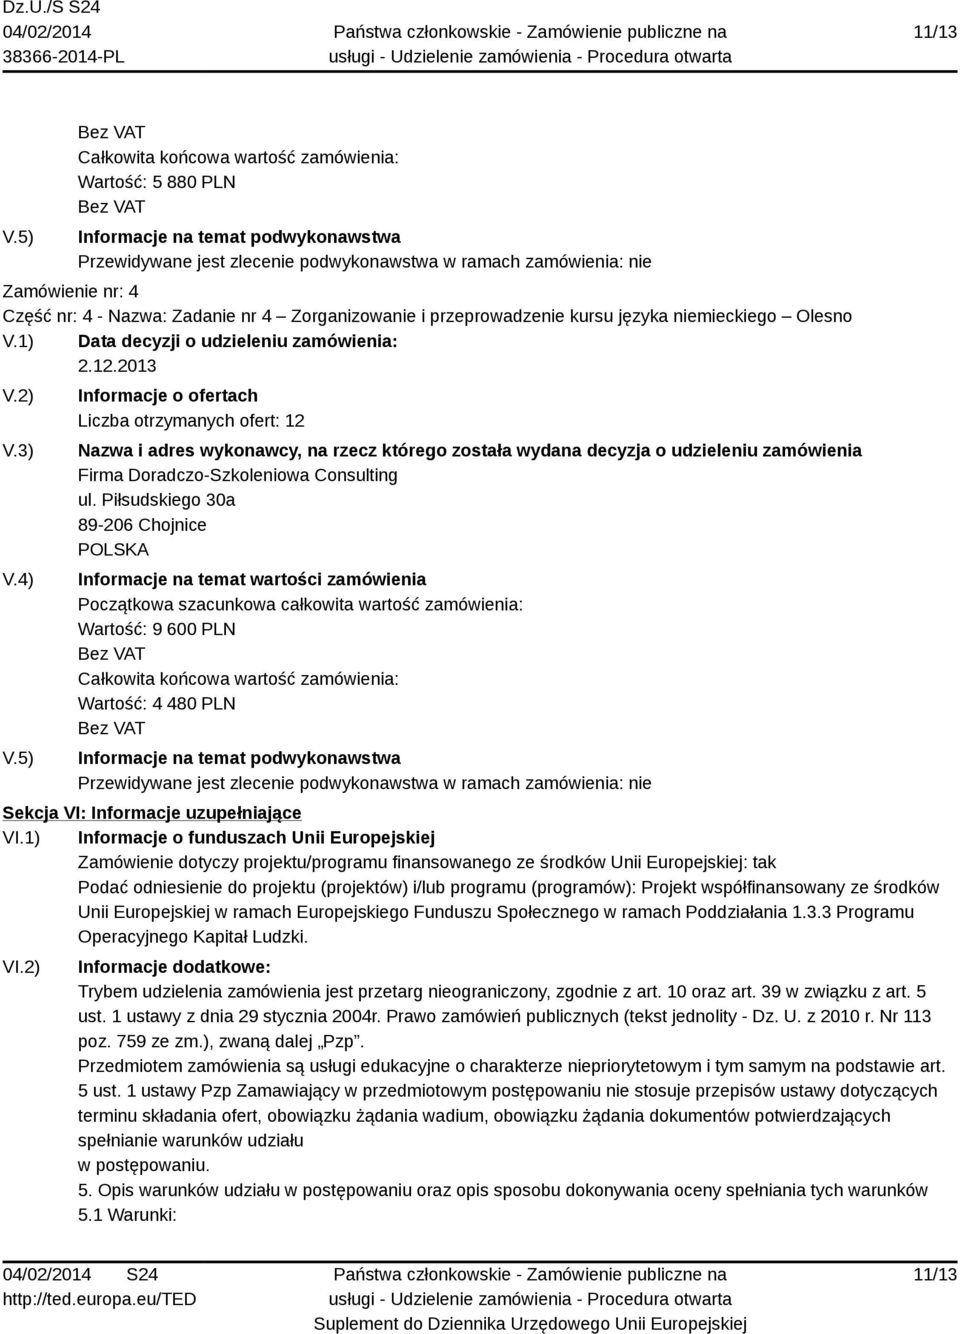 Zadanie nr 4 Zorganizowanie i przeprowadzenie kursu języka niemieckiego Olesno V.1) Data decyzji o udzieleniu zamówienia: 2.12.2013 V.2) V.3) V.4) V.